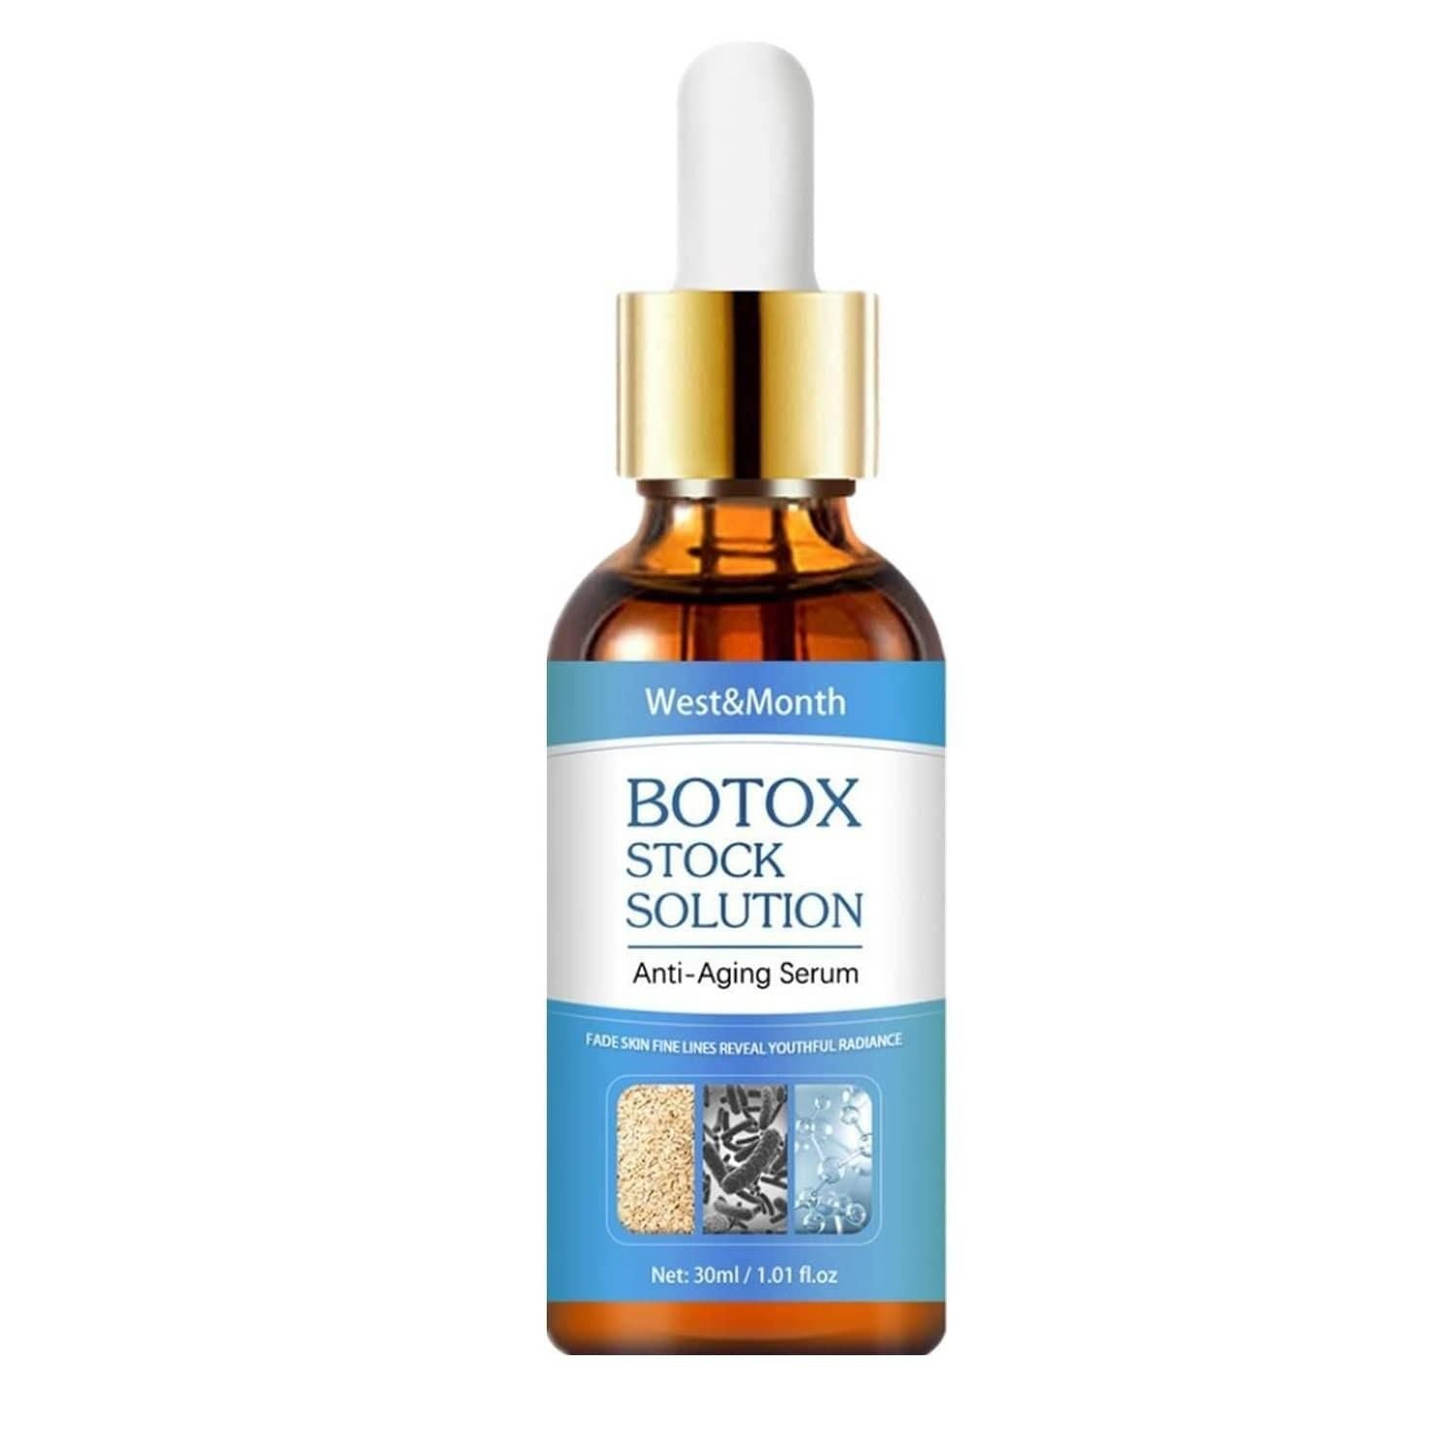 Botox Anti-Aging Serum - Buy 1 + 1 FREE 🔥FLASH SALE🔥